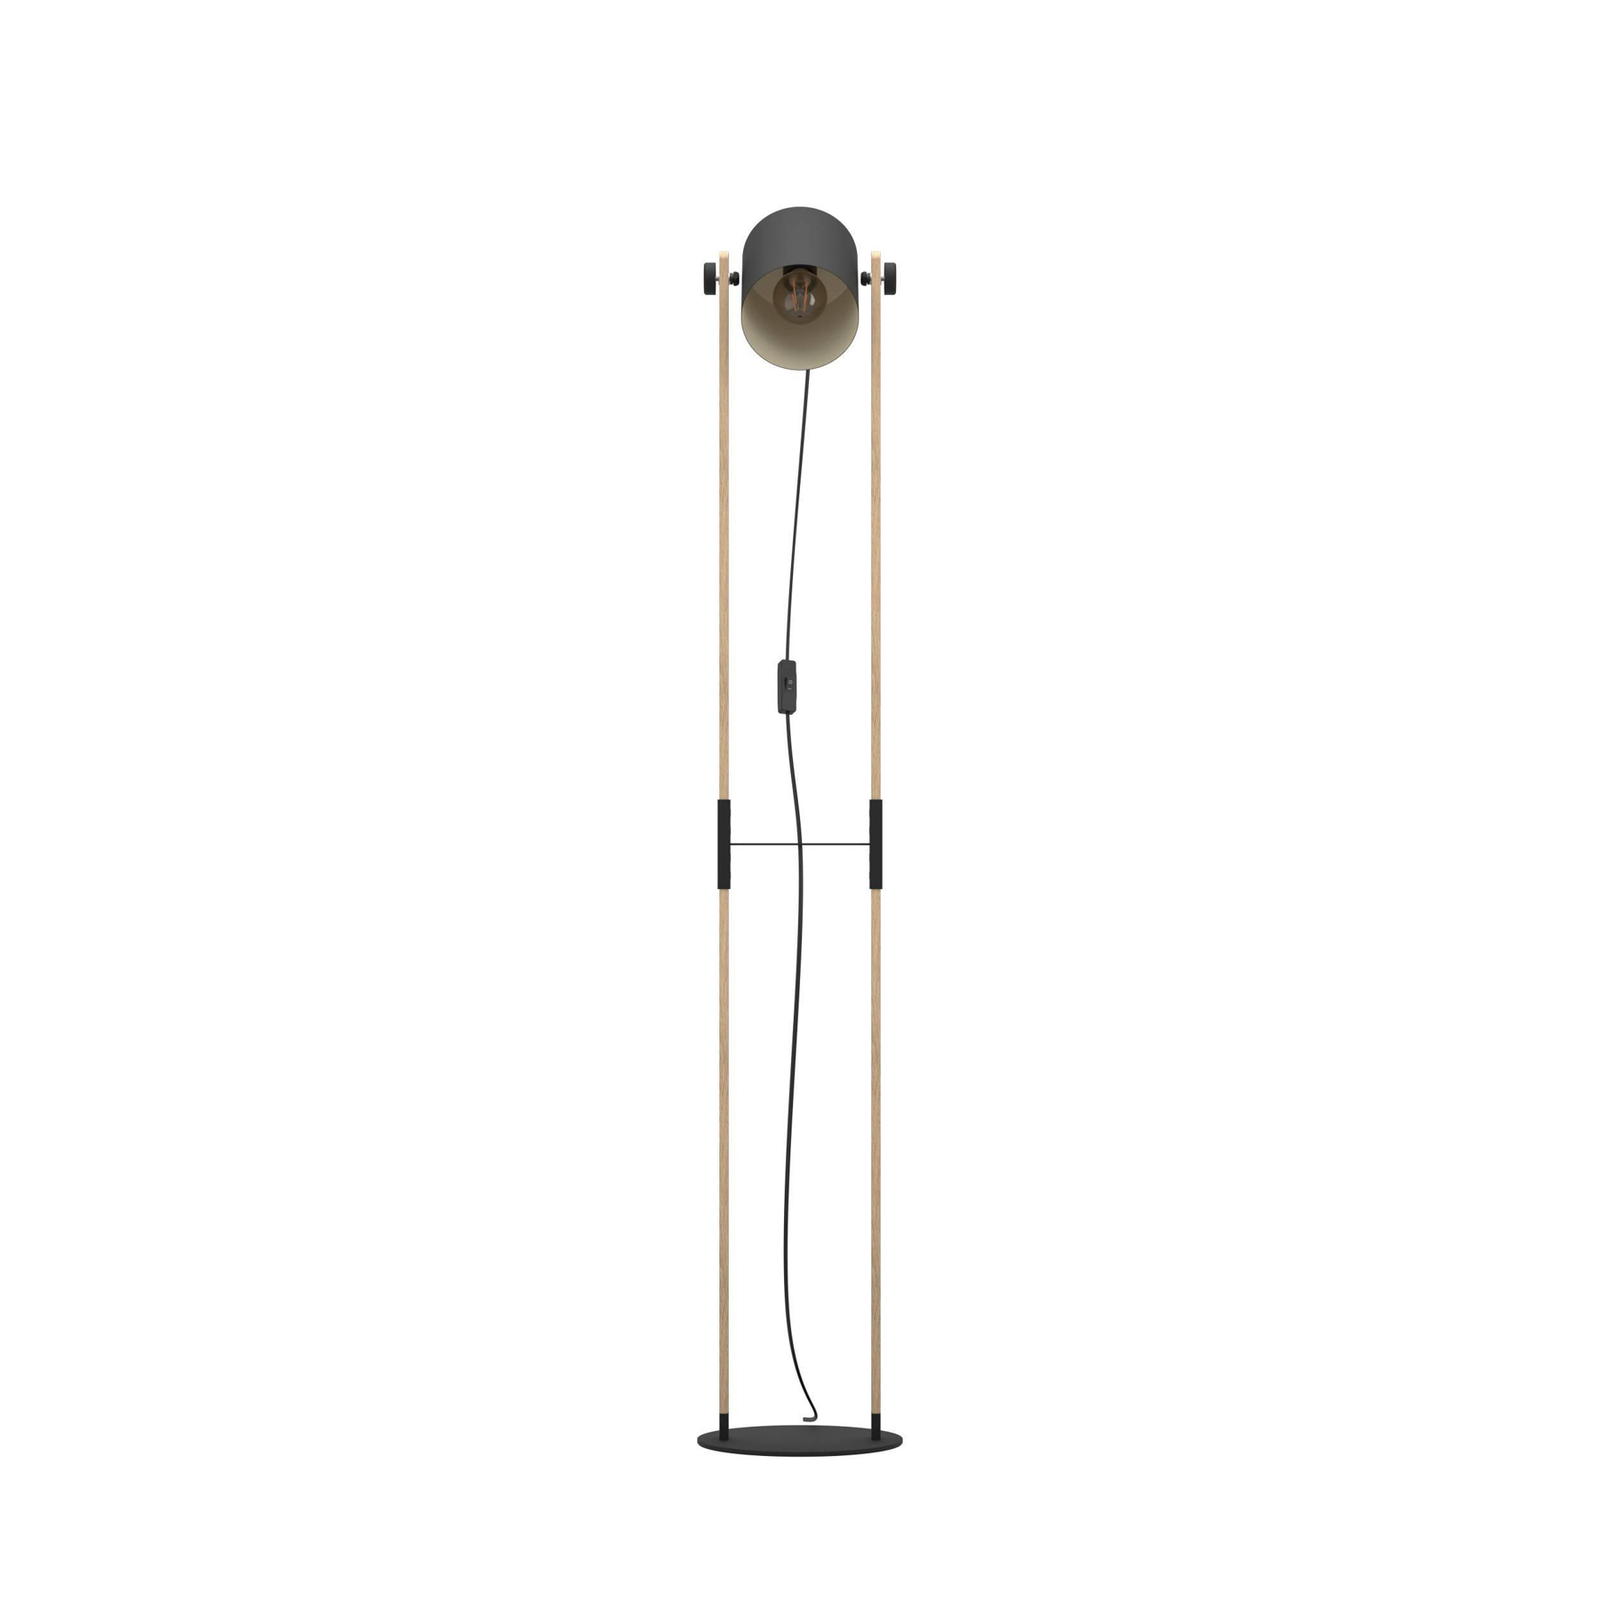 Hornwood állólámpa, magasság 140 cm, fekete/barna, acél